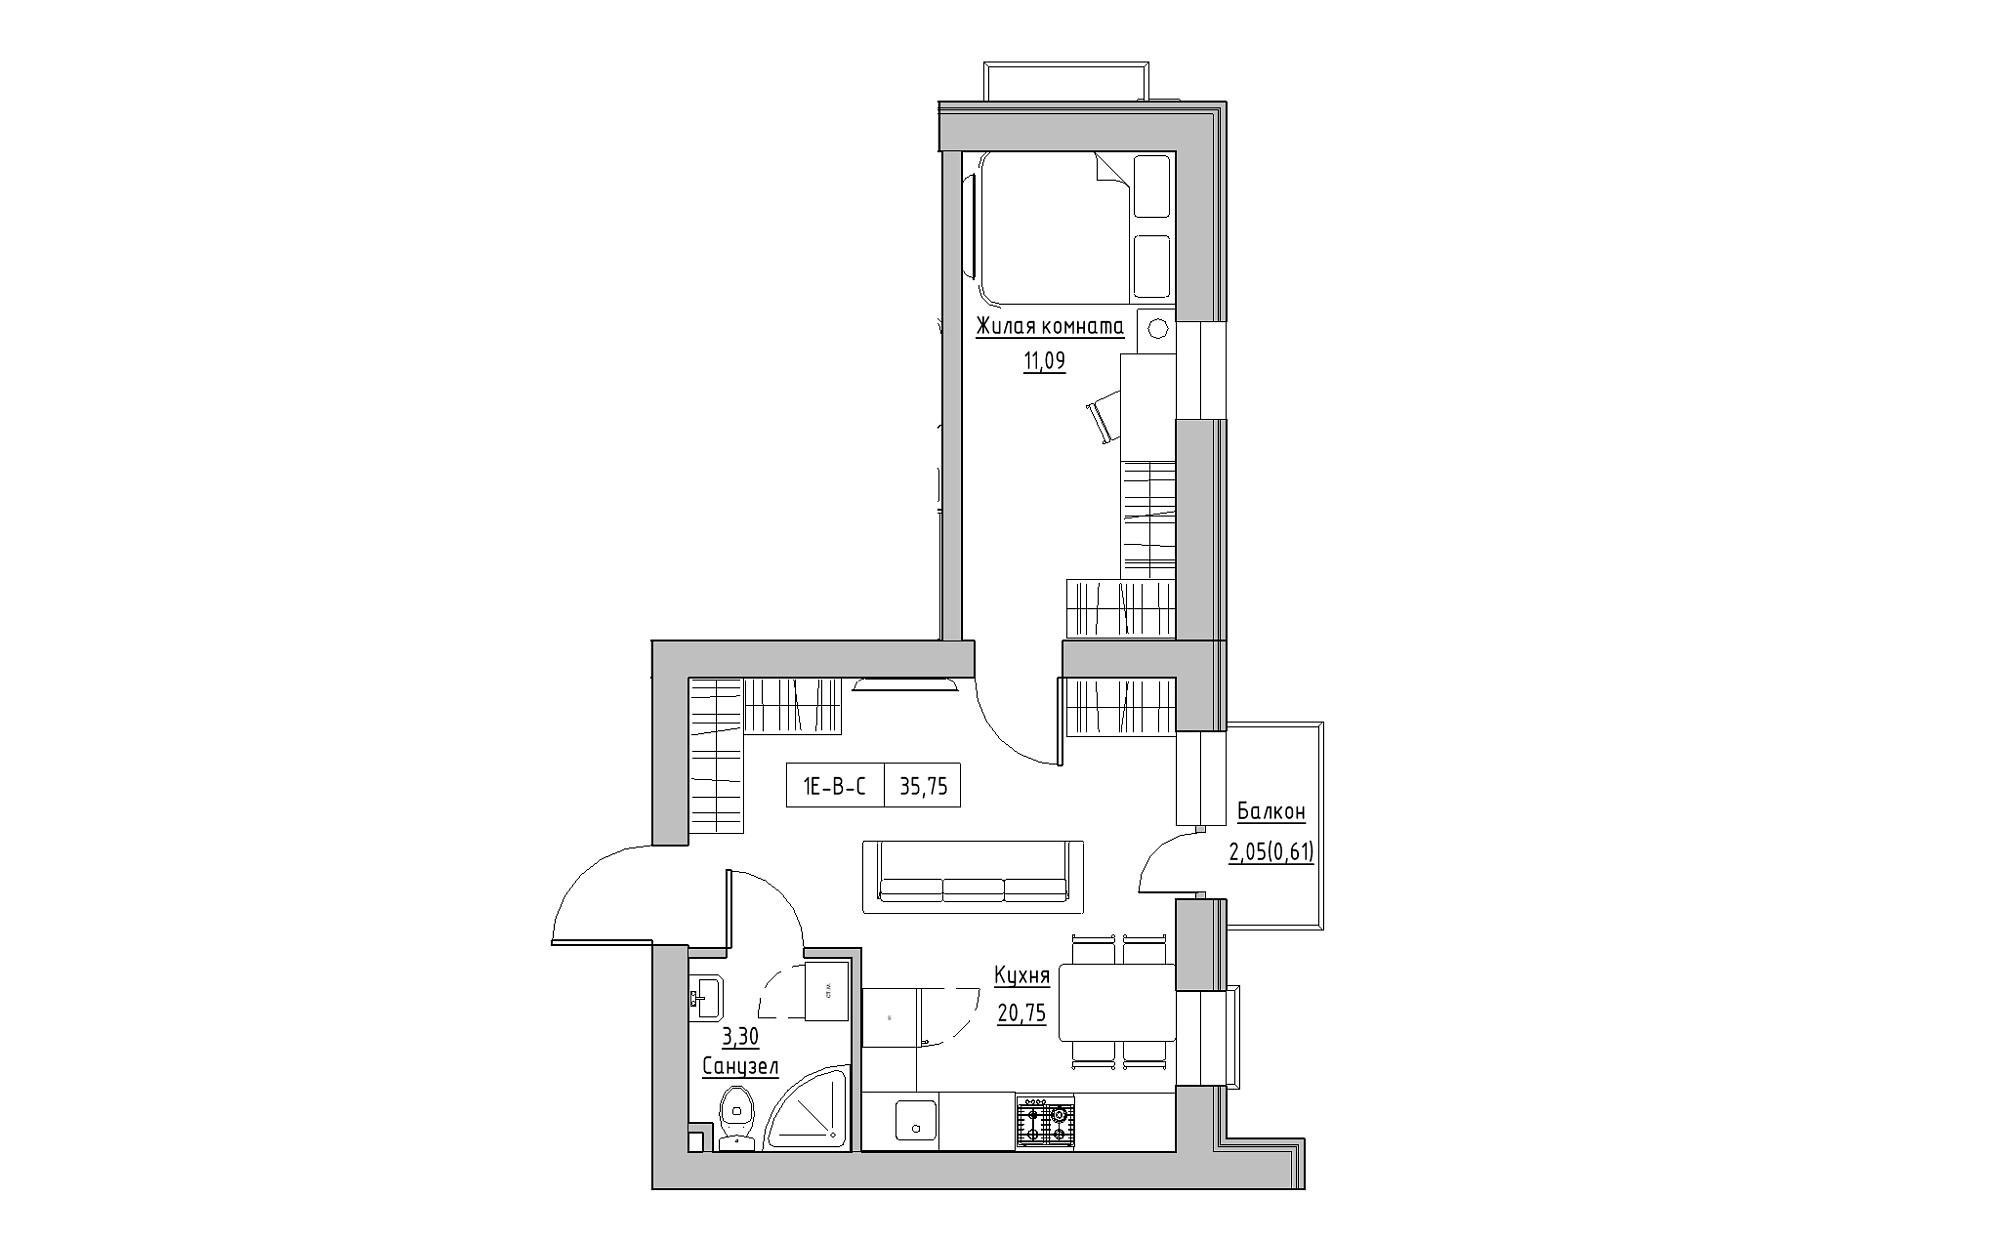 Планування 1-к квартира площею 35.75м2, KS-022-02/0009.